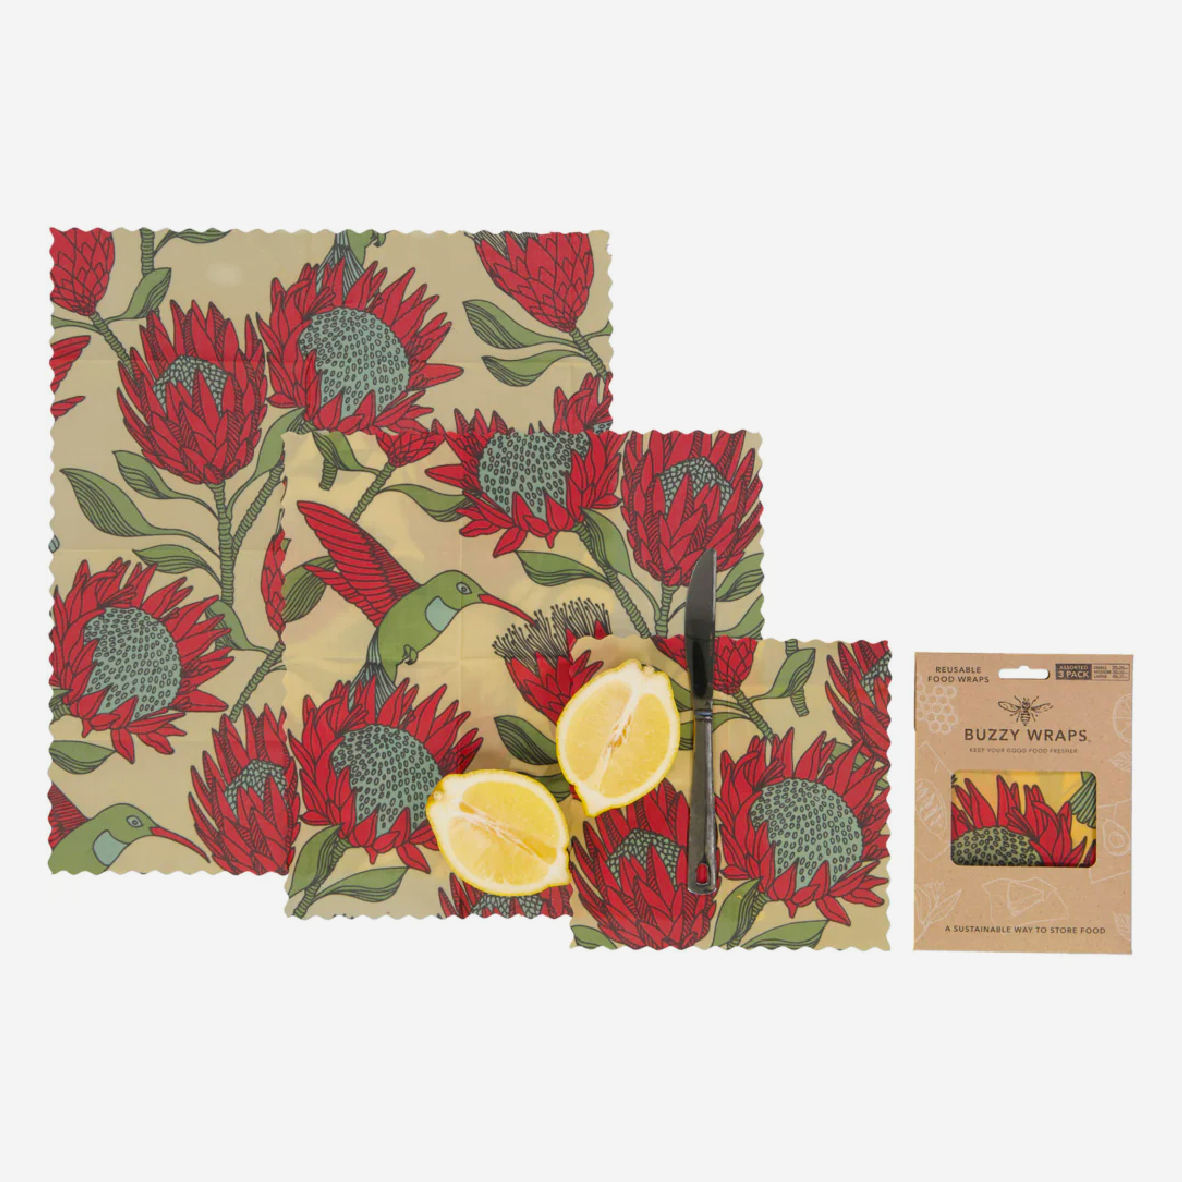 Buzzy Wraps - Set of 3 - Protea Red on White